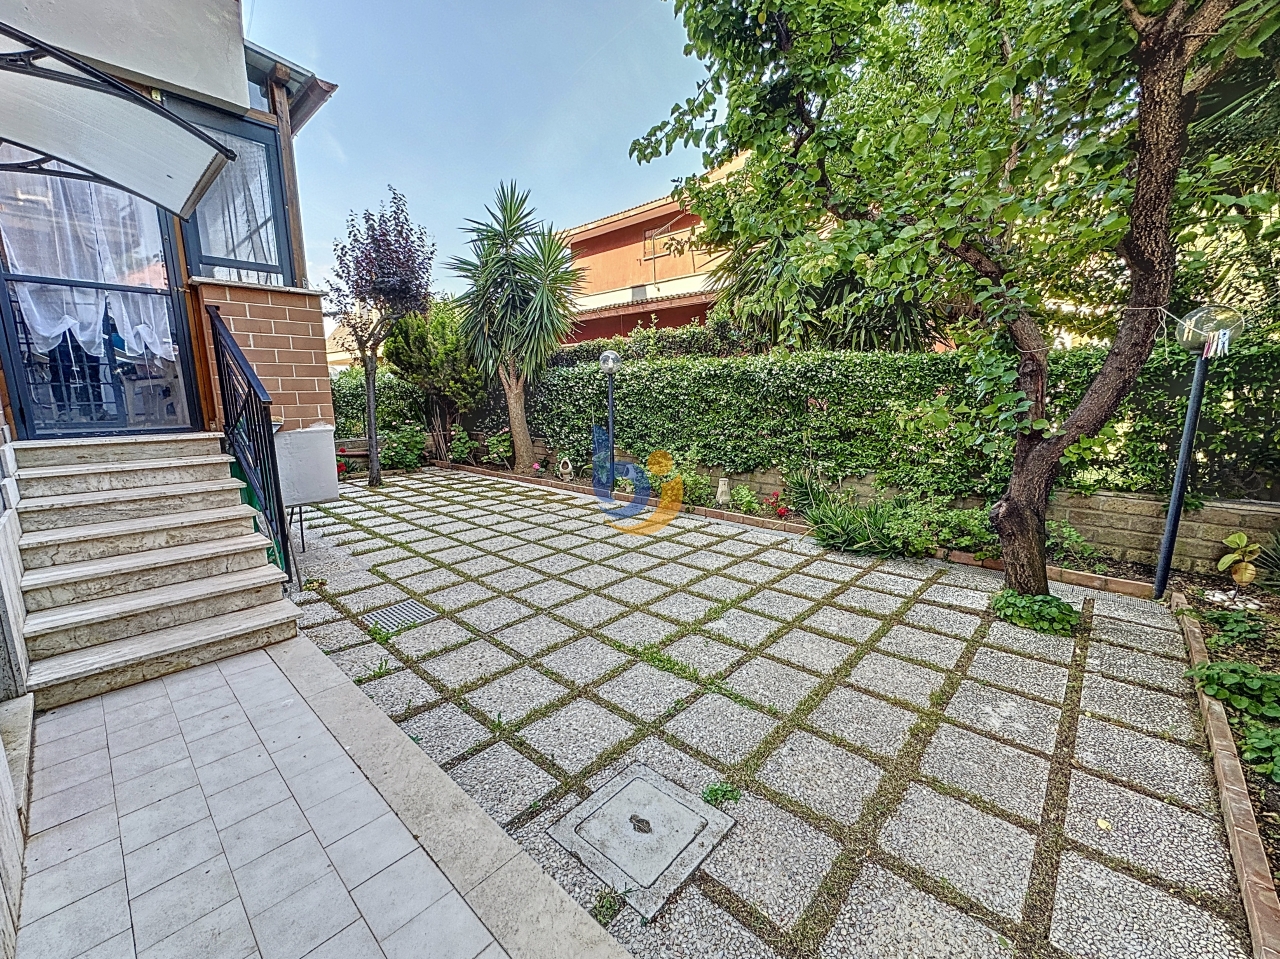 Appartamento in vendita a Santa Marinella